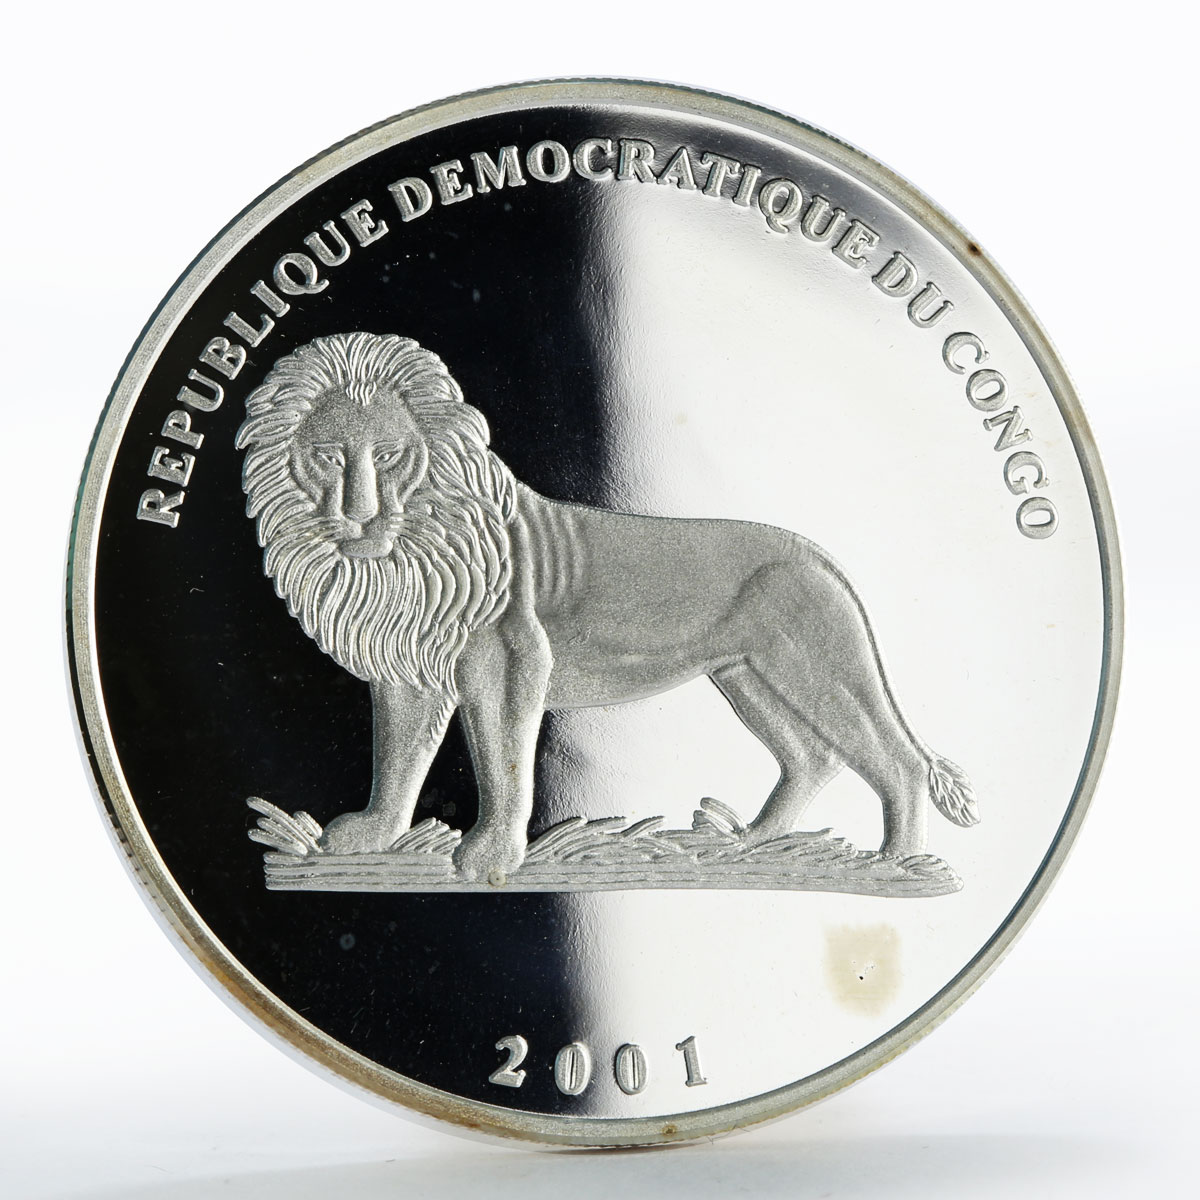 Congo 10 francs Ship Cutty Sark silver proof coin 2001